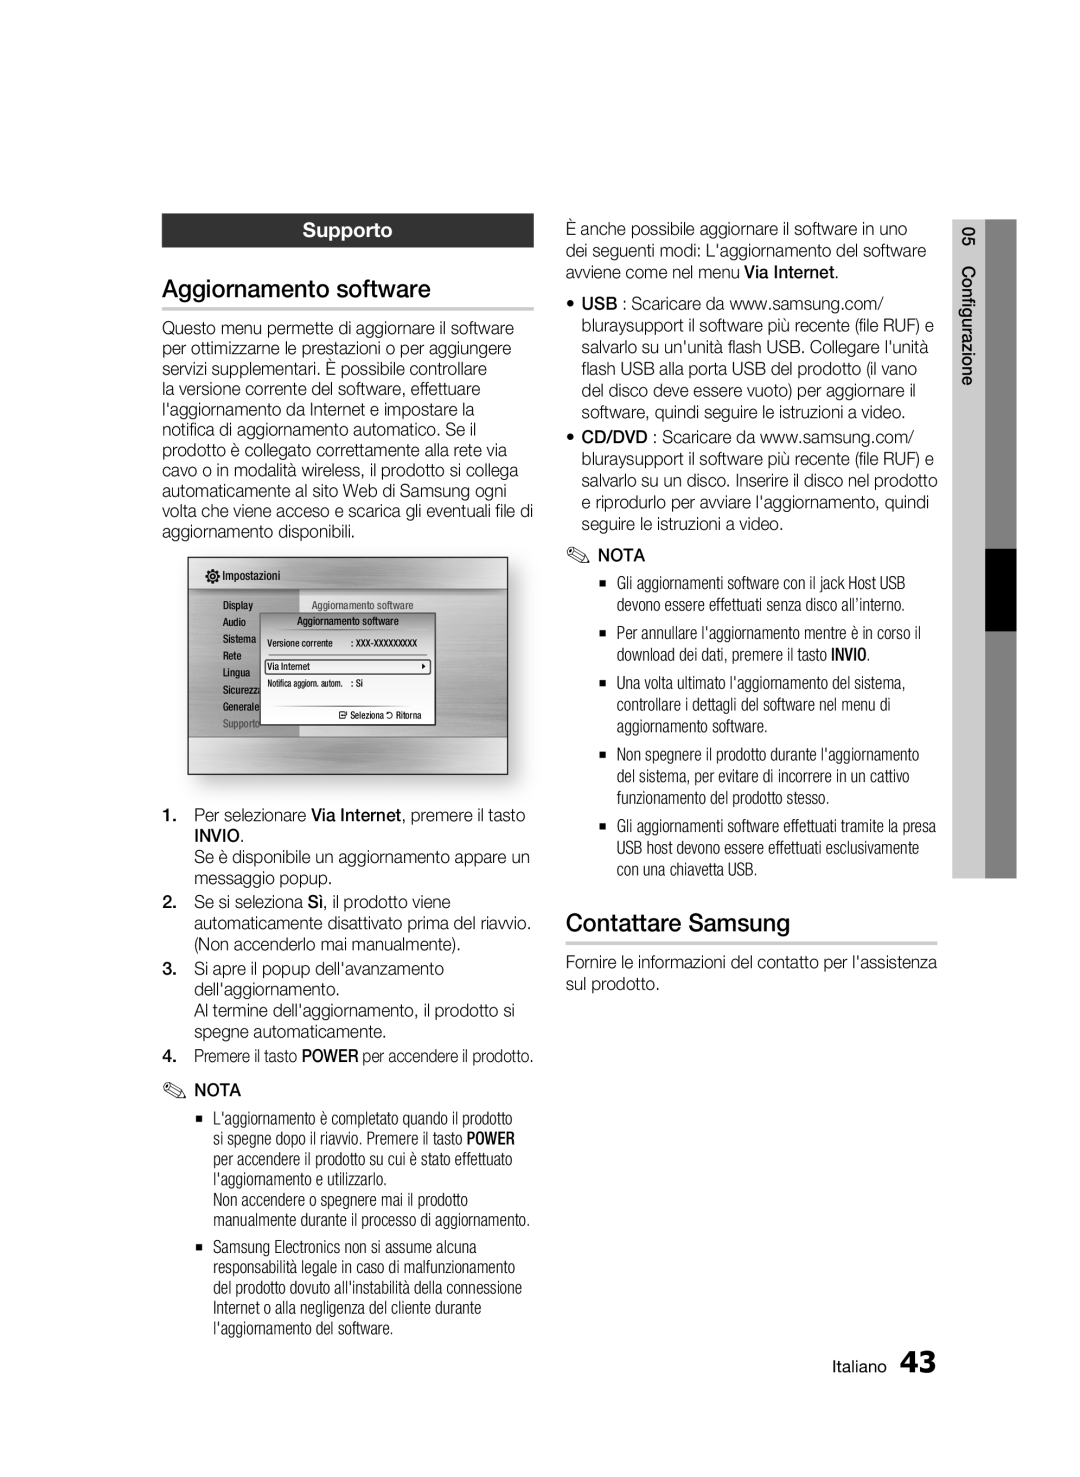 Samsung BD-C6500/XEF manual Aggiornamento software, Contattare Samsung, Supporto, Configurazione, Italiano 